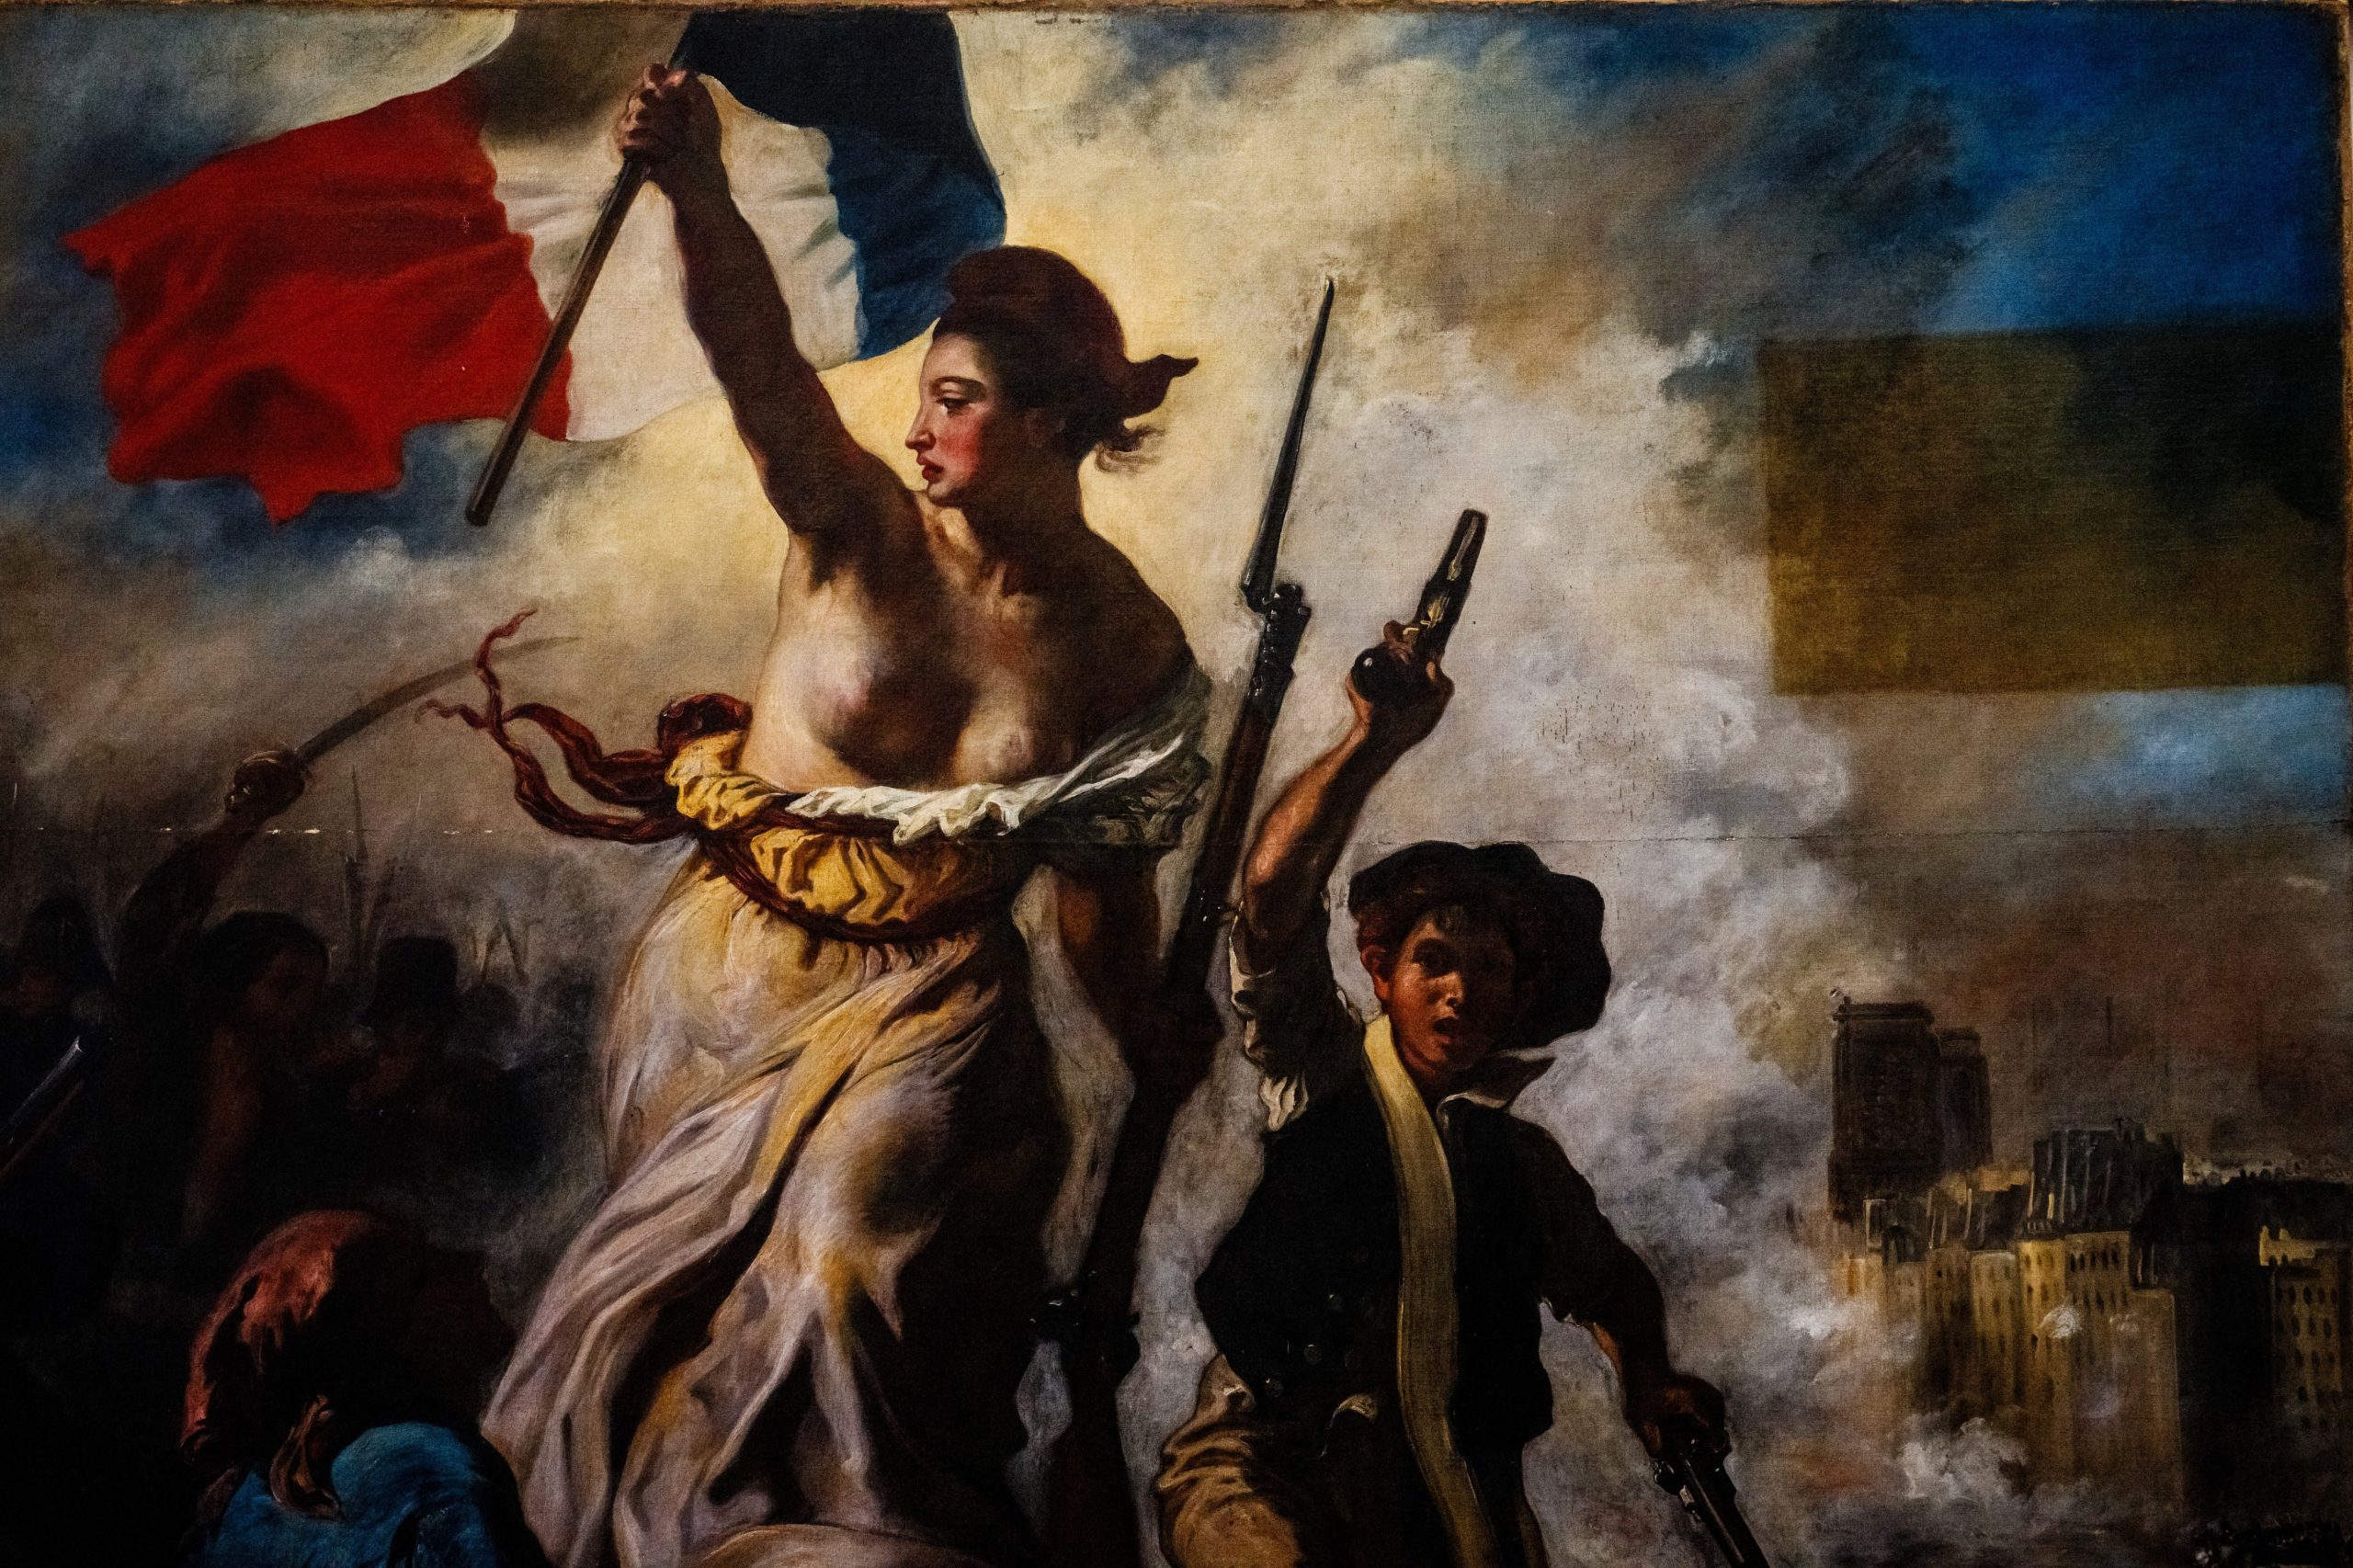 Se dice que Delacroix basó su Libertad en una lavandera llamada Anne-Charlotte que acudió a las barricadas